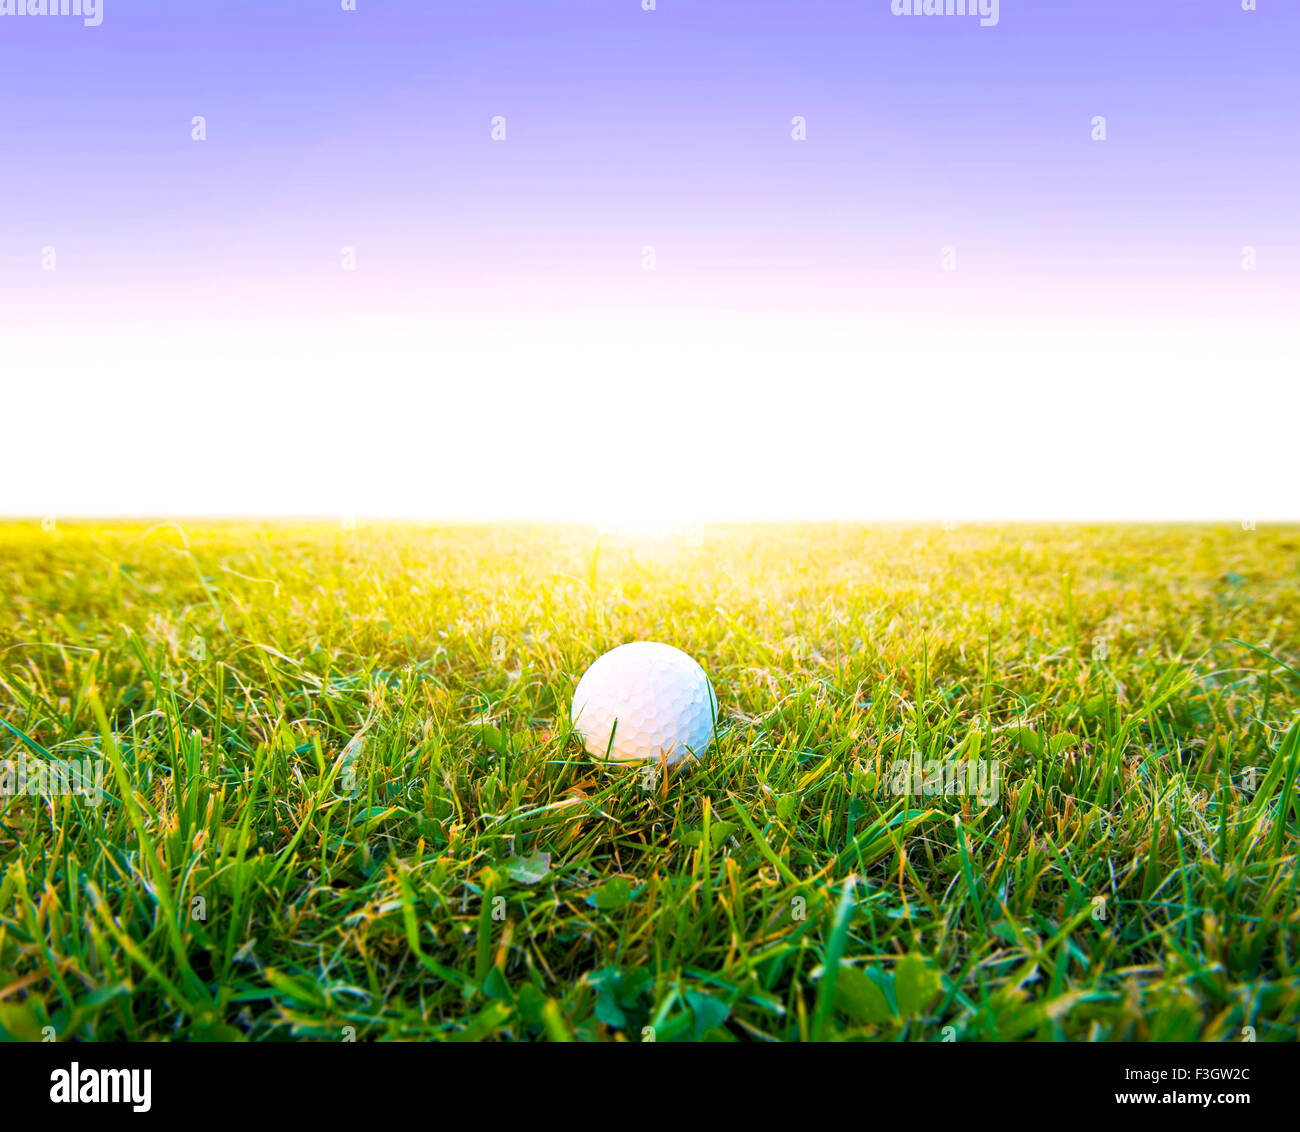 Gioco di golf. Palline da golf in erba. Foto Stock